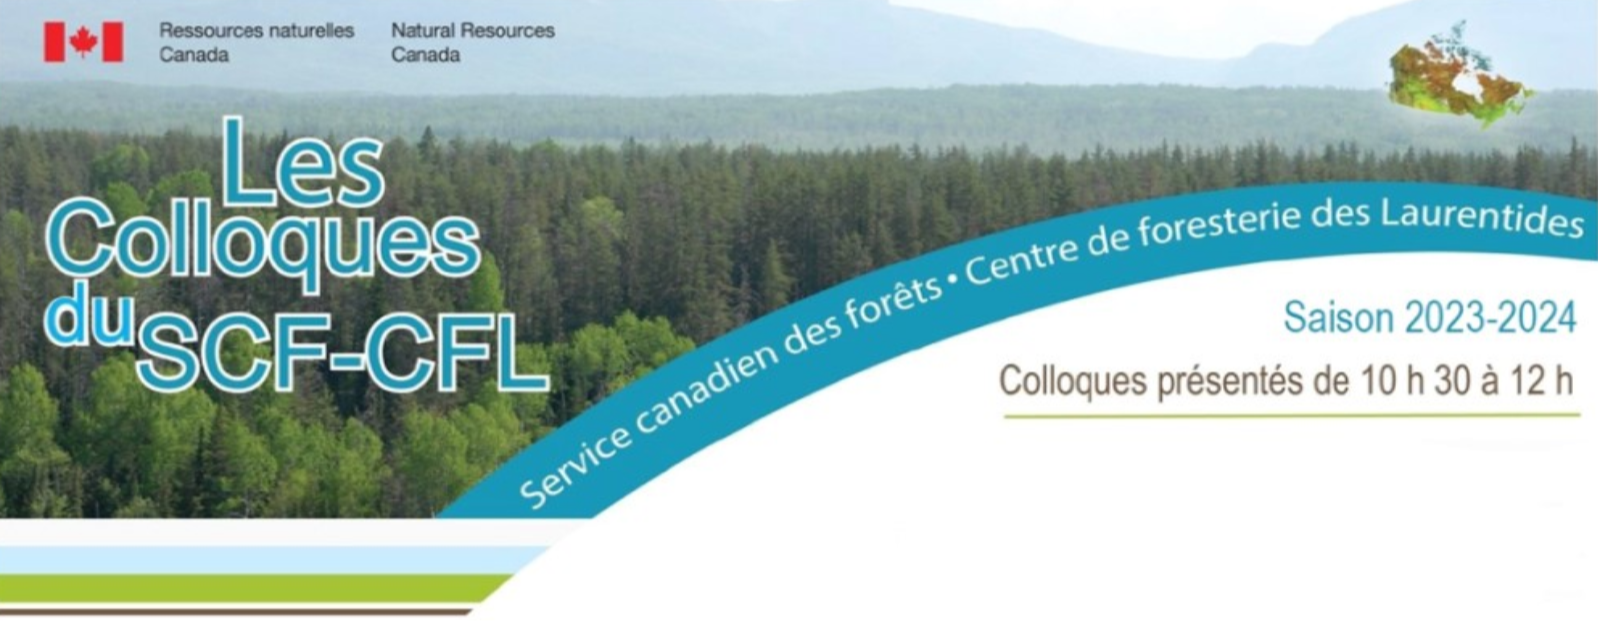 Colloques du SCF-CFL - Développement de méthodes de rechange aux herbicides en partenariat avec les communautés autochtones